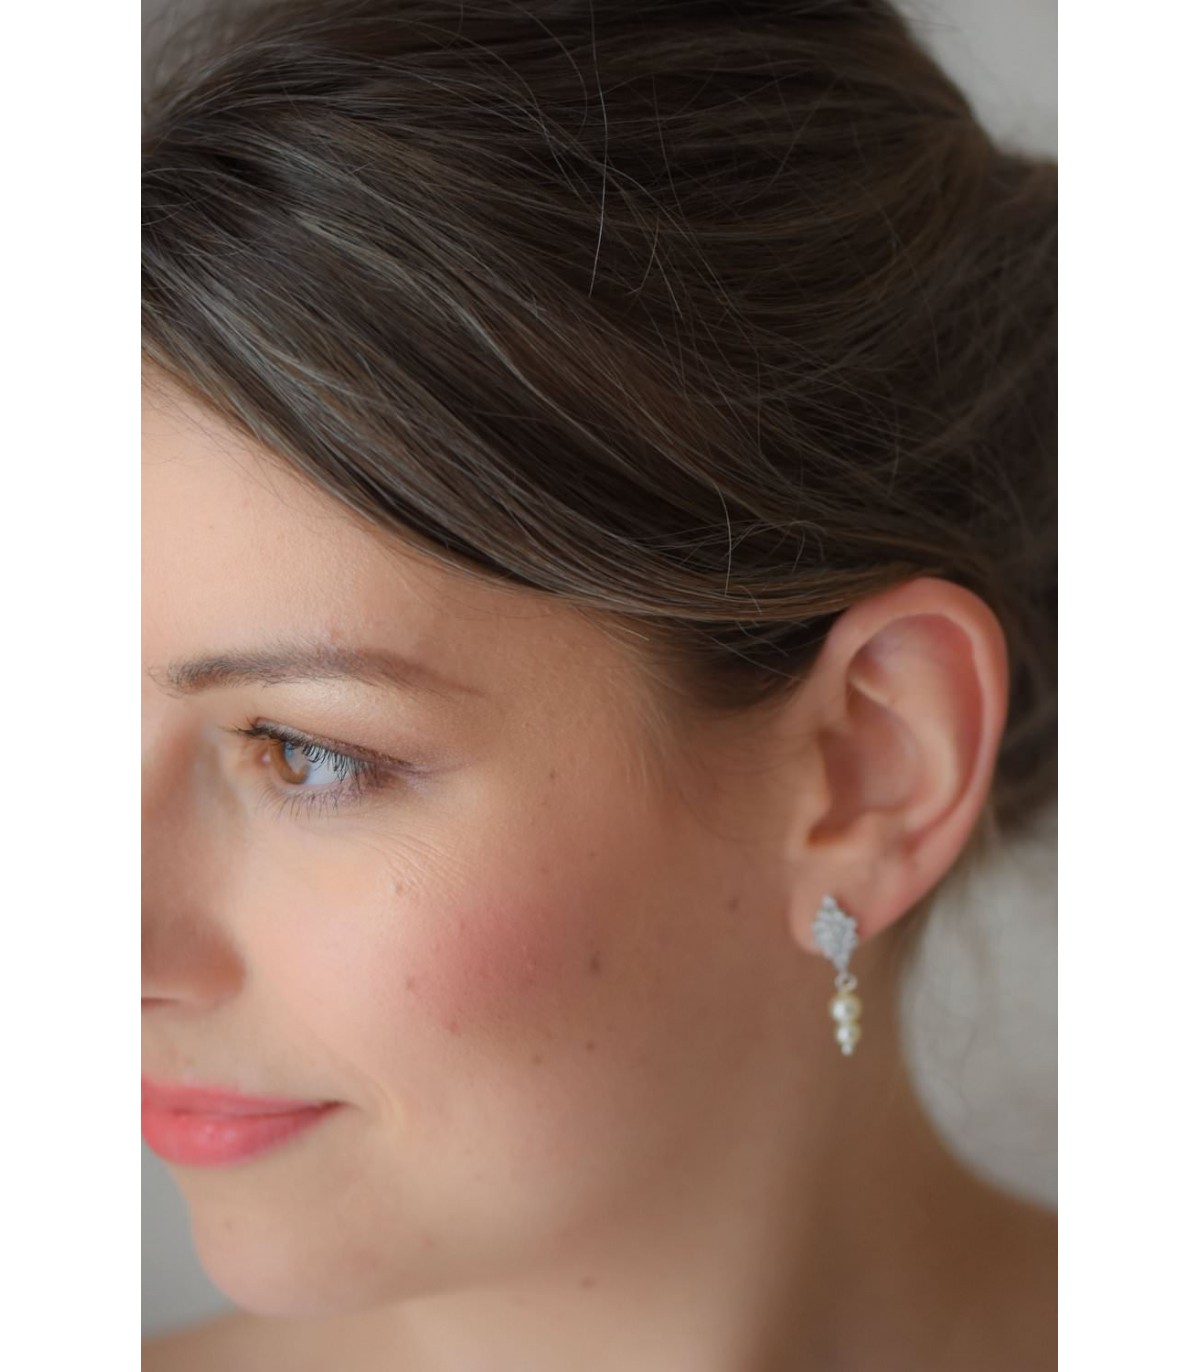 Boucles d'oreilles pour la mariée modèle Albane, avec une goutte en strass et des crochets à cristaux.